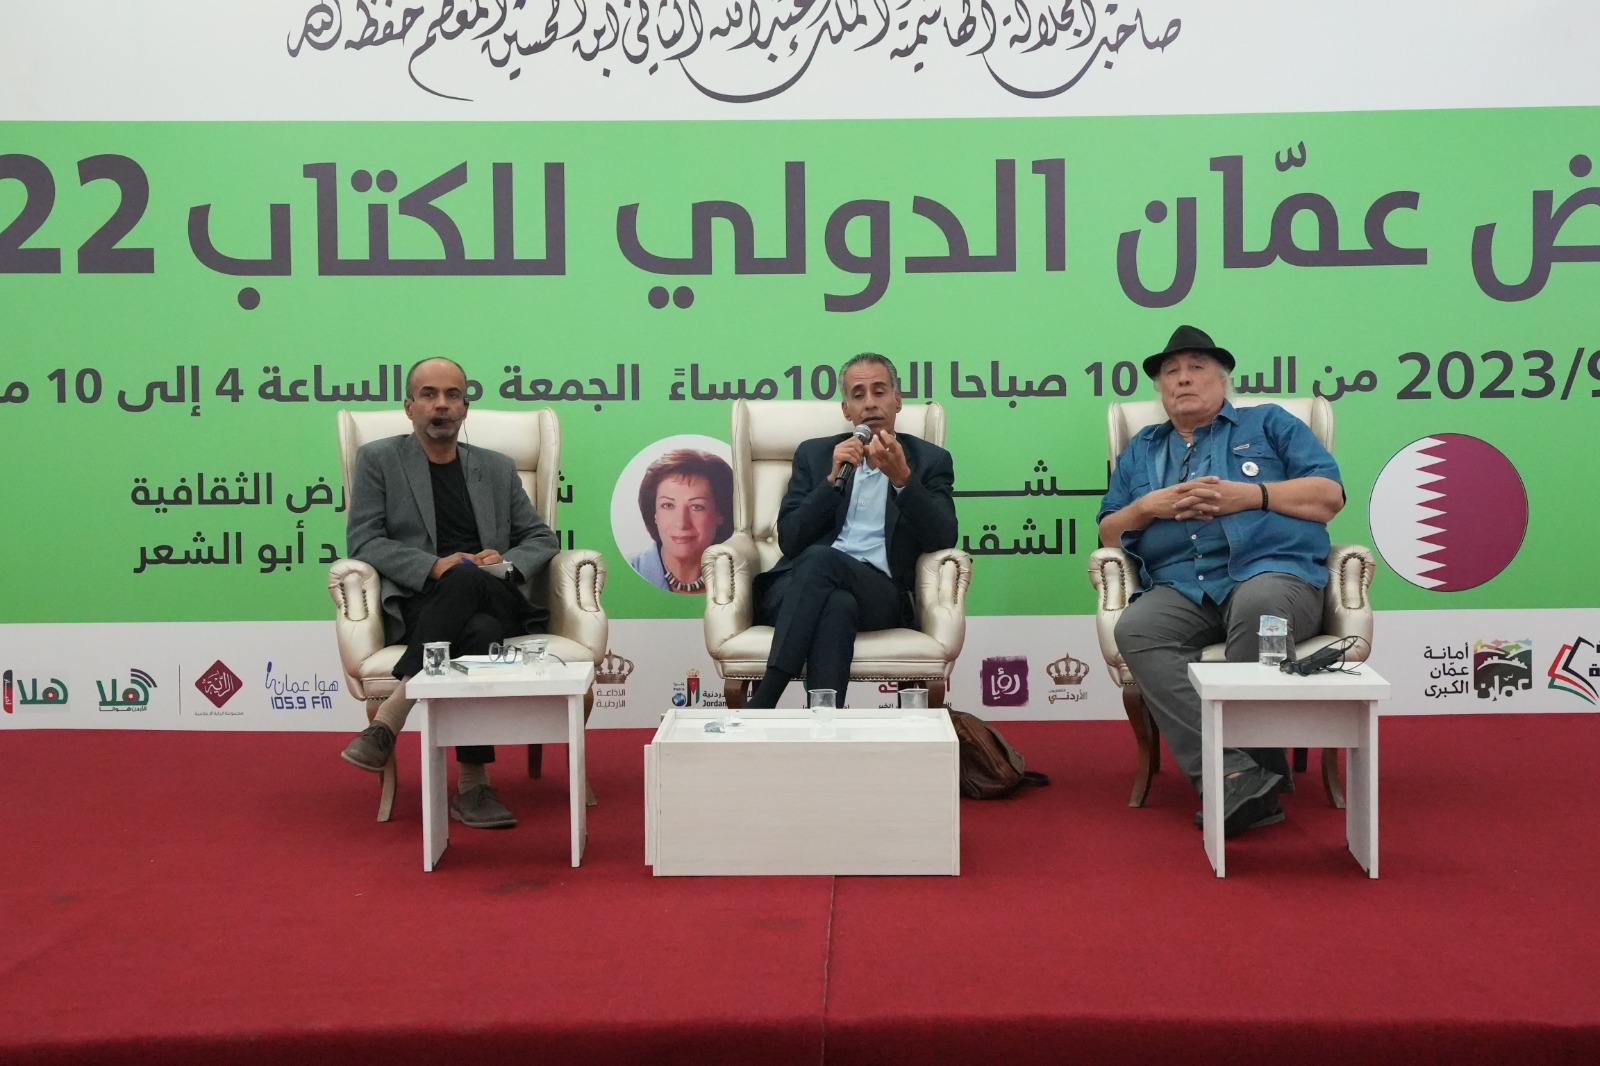 جلسة حوارية في معرض عمان للكتاب بمشاركة الروائيان الجزائري واسيني الأعرج والأردني جلال برجس